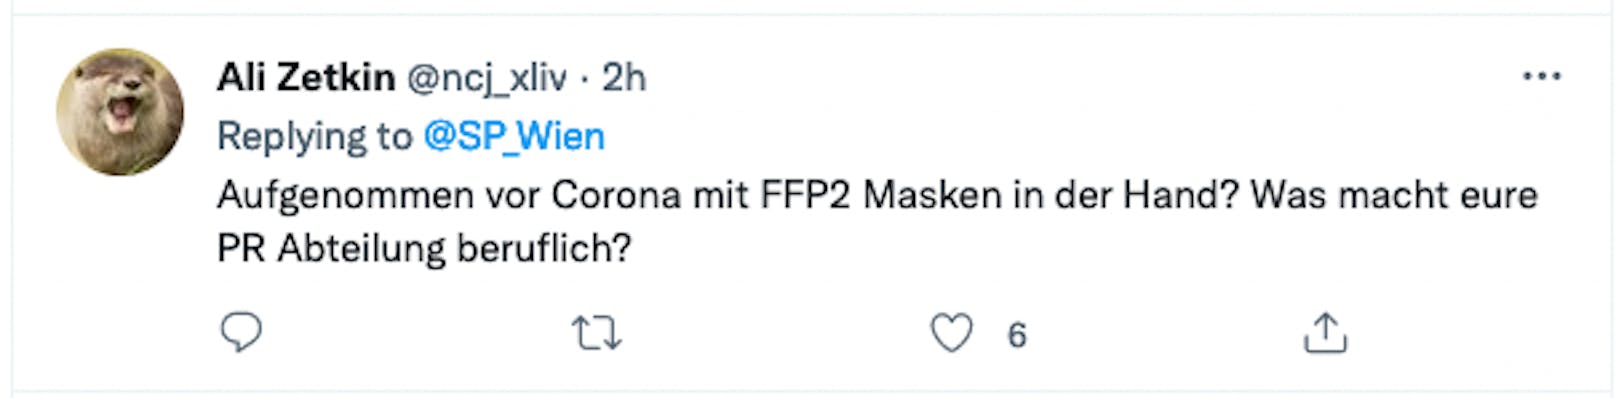 Viel Spott für den missglückten Tweet der Wiener SPÖ